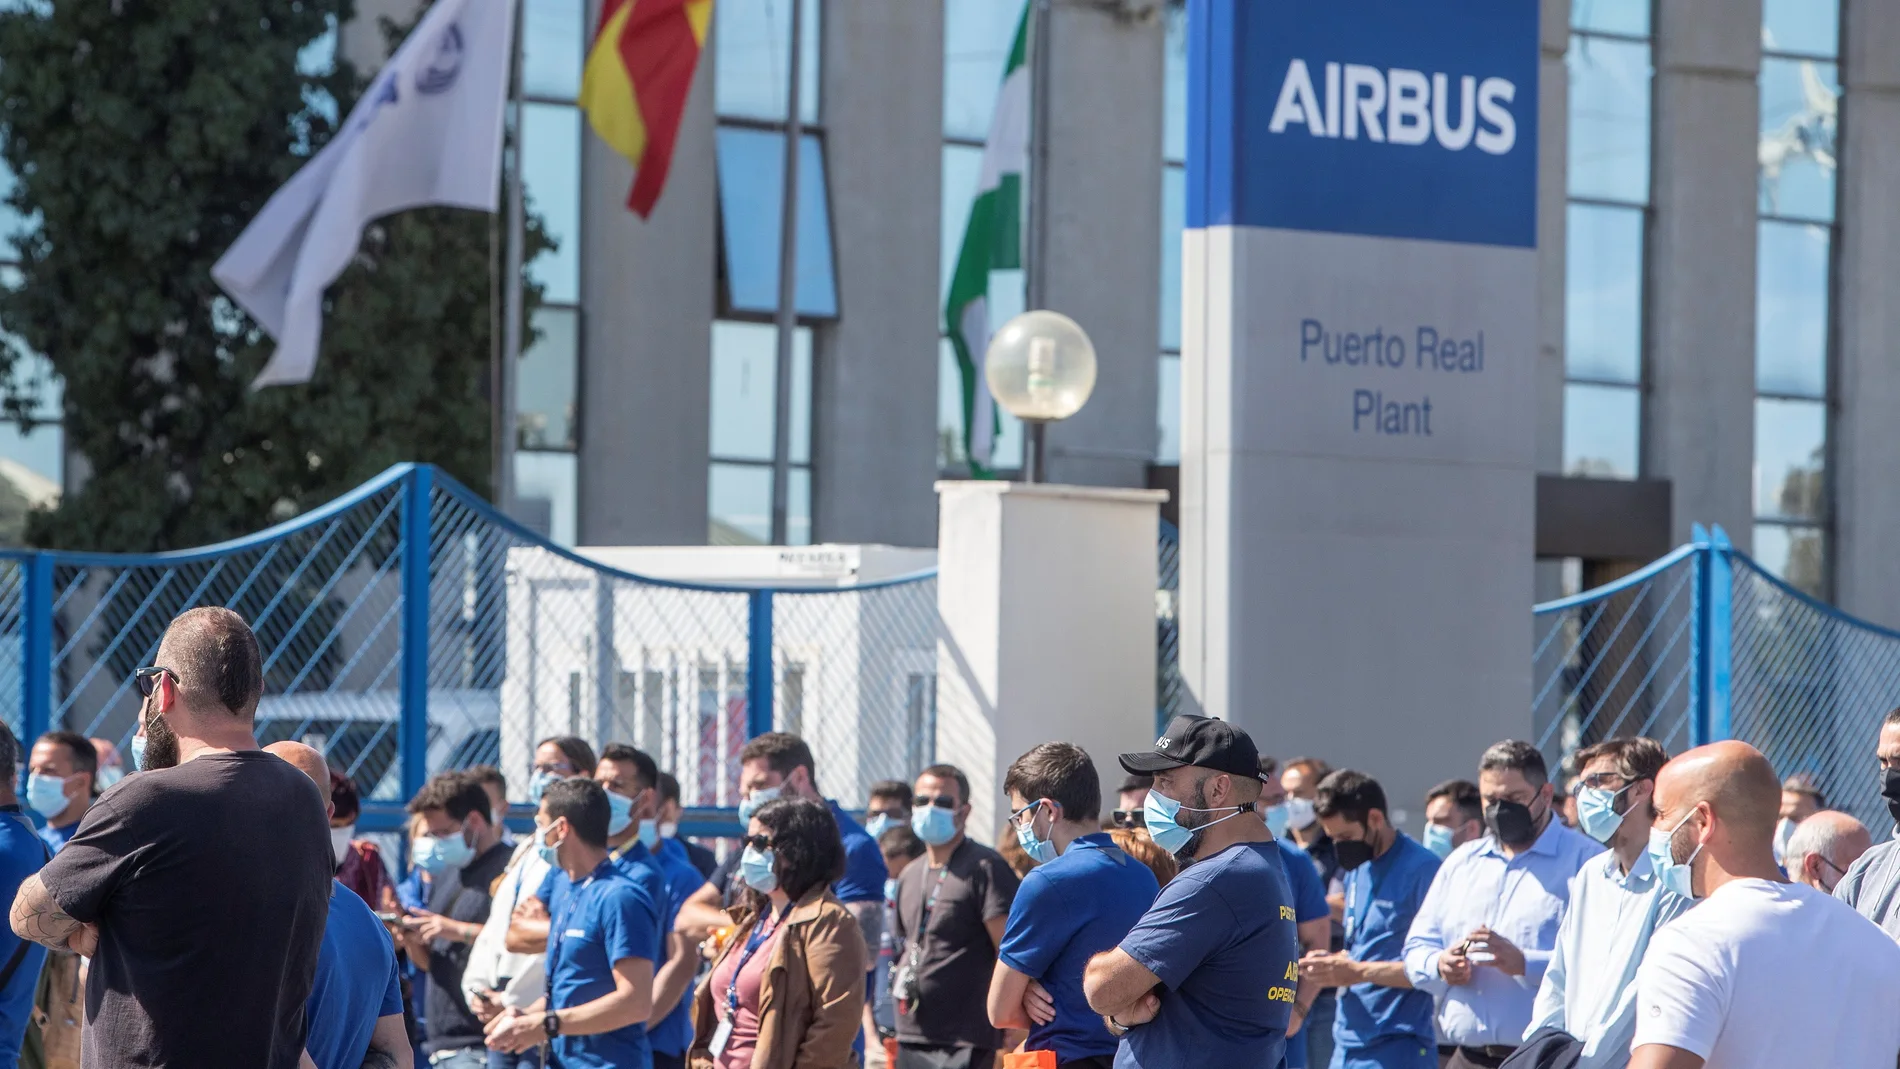 Los trabajadores de Airbus de la planta de Puerto Real (Cádiz), concentrados a las puertas de la factoría